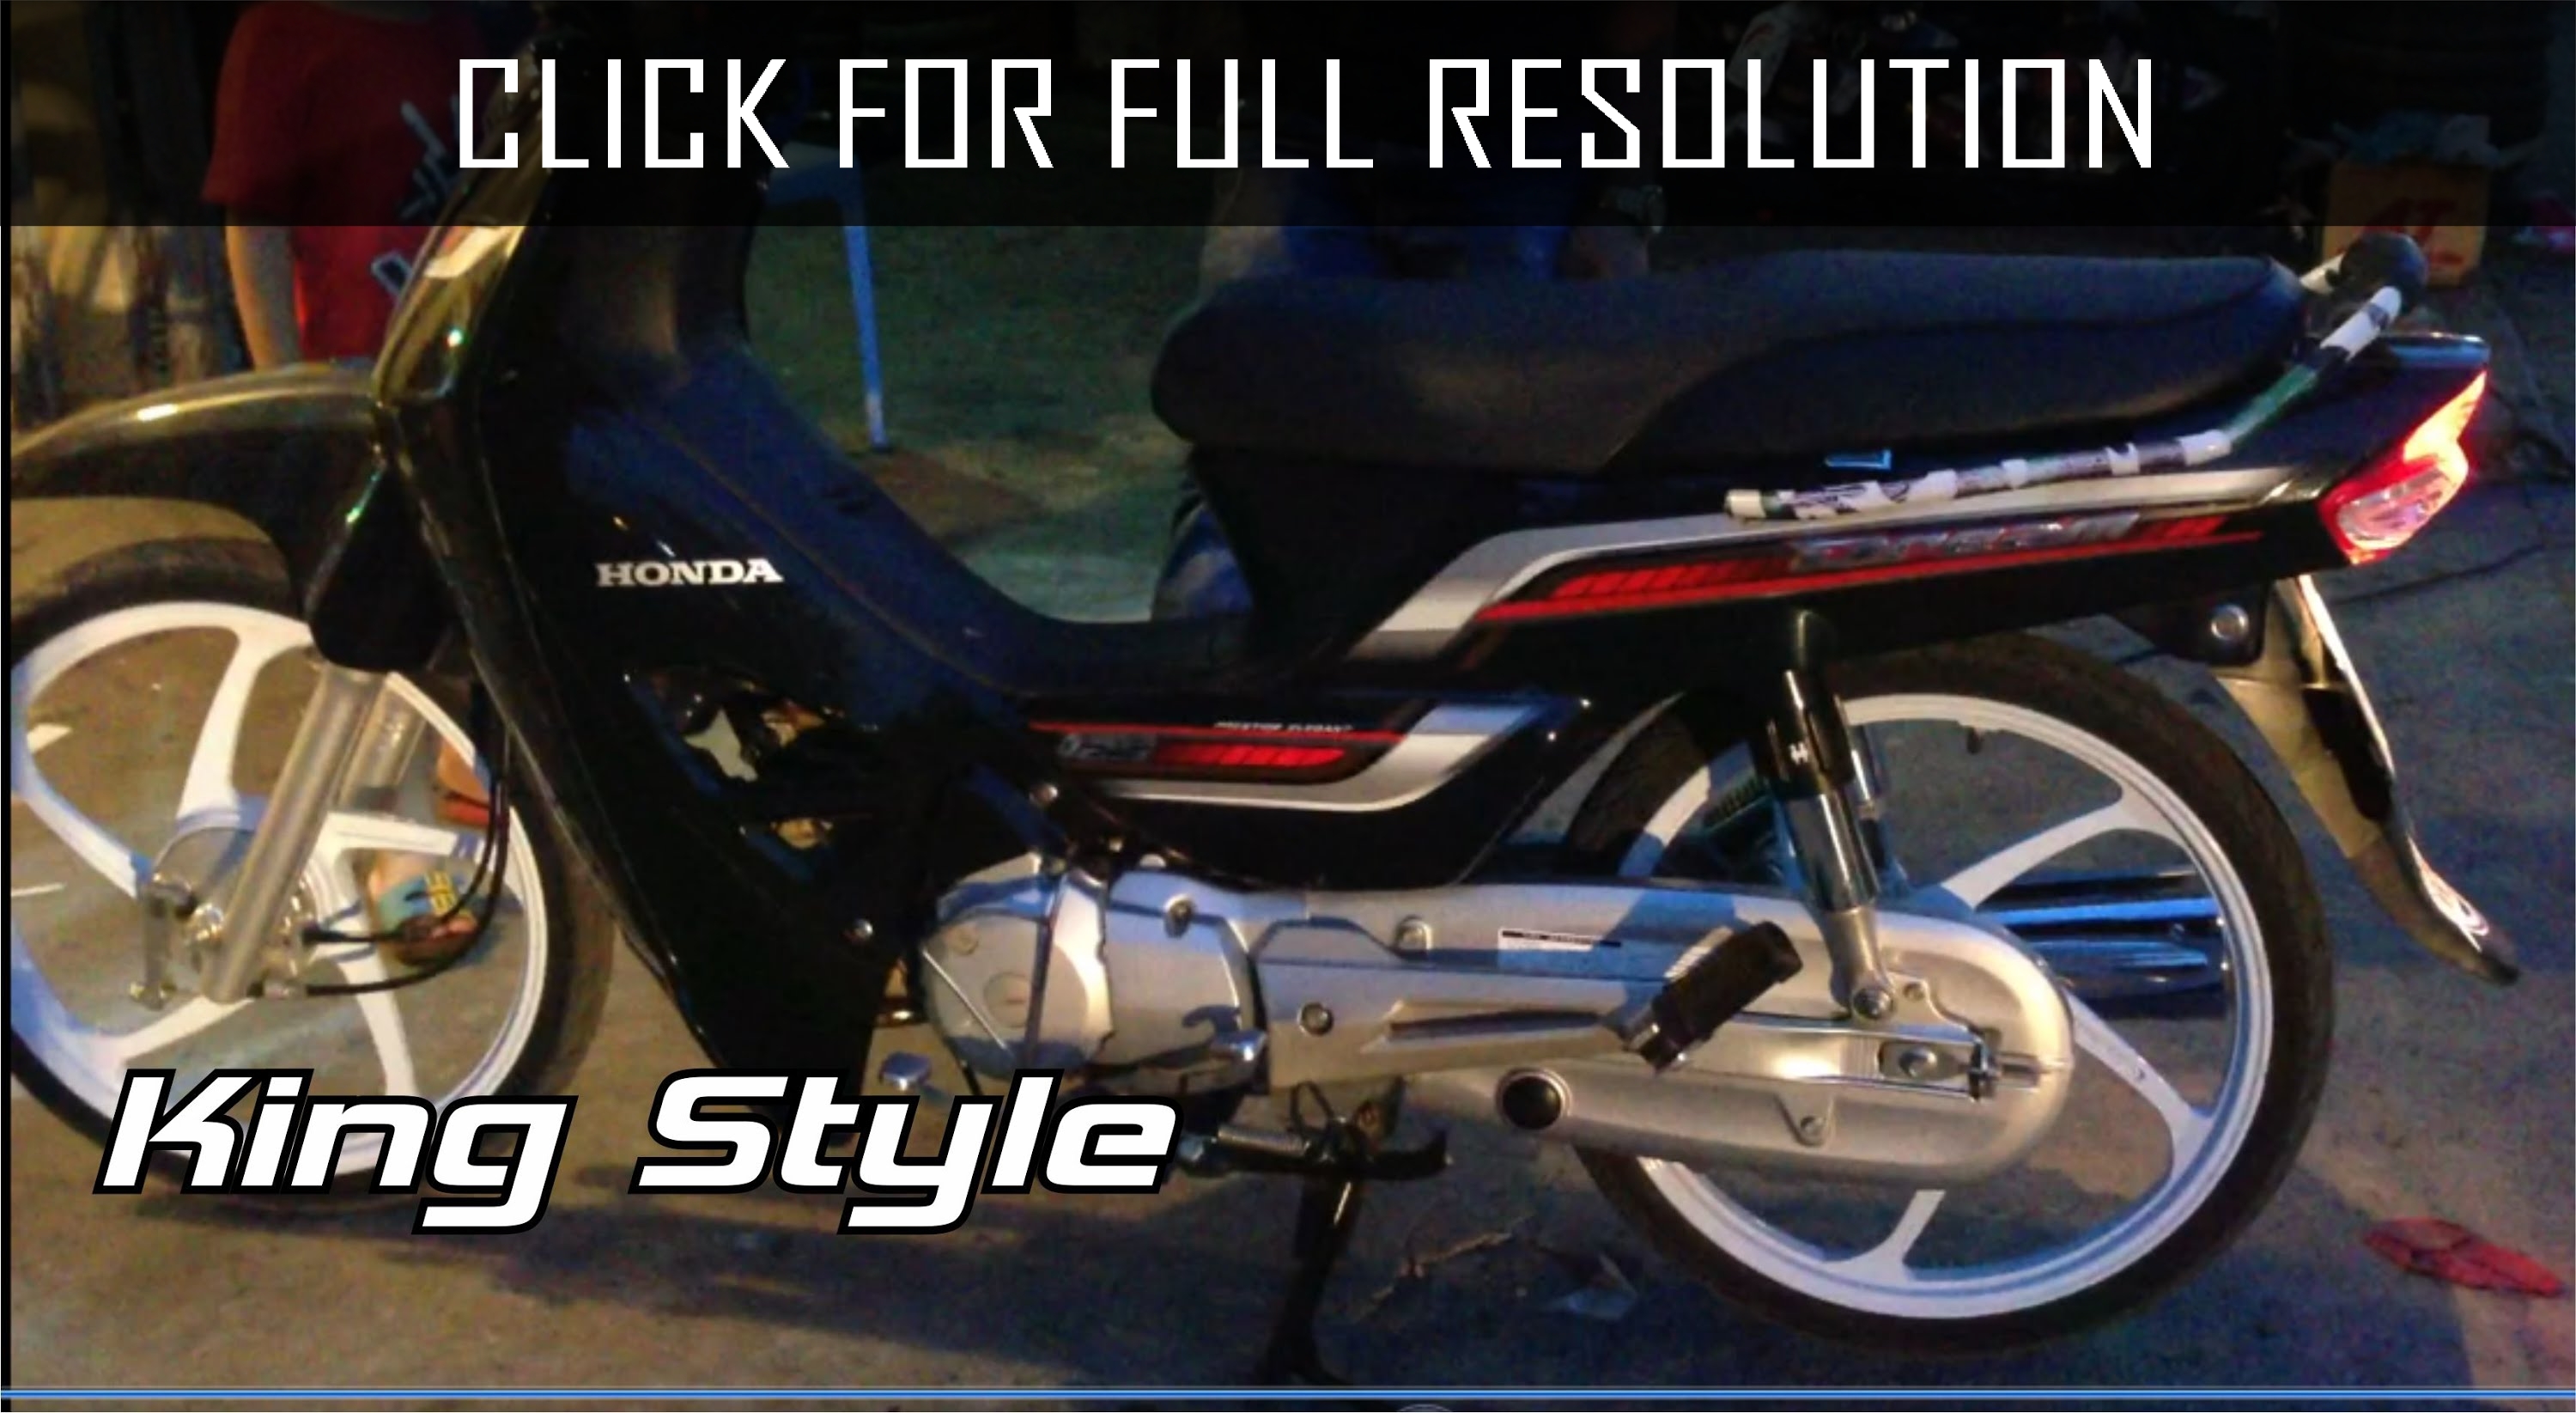 Honda Dream 125cc 2014